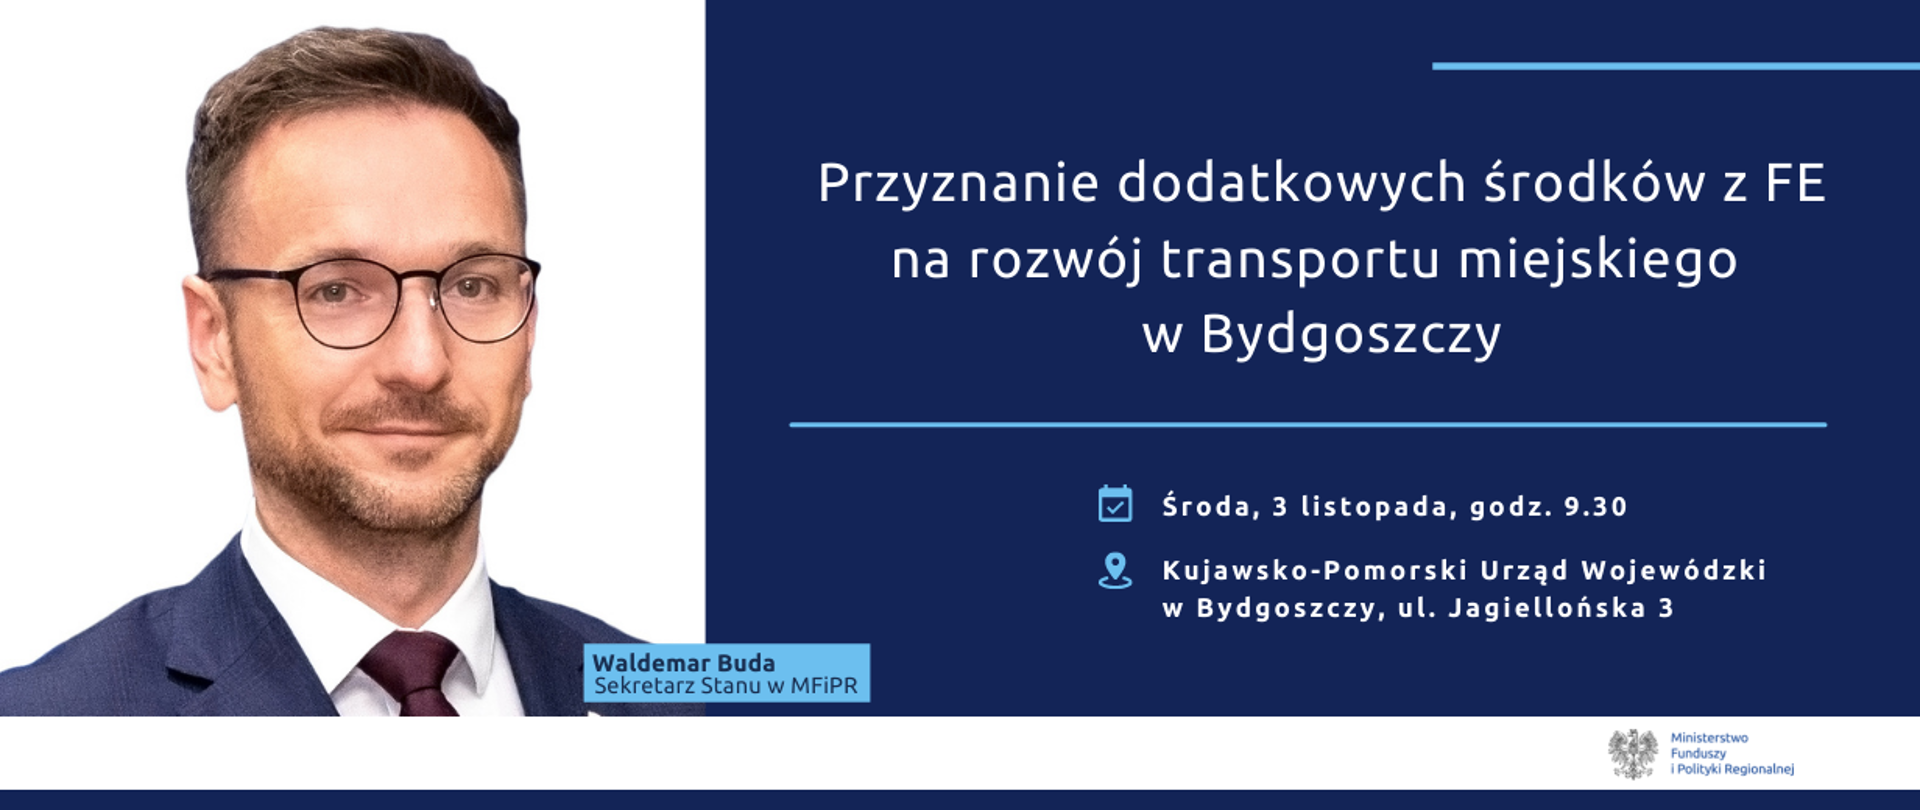 Po lewej zdjęcie wiceministra Waldemara Budy. Po prawej zapowiedź briefingu: "Dodatkowe środki z FE na rozwój transportu miejskiego w Bydgoszczy"